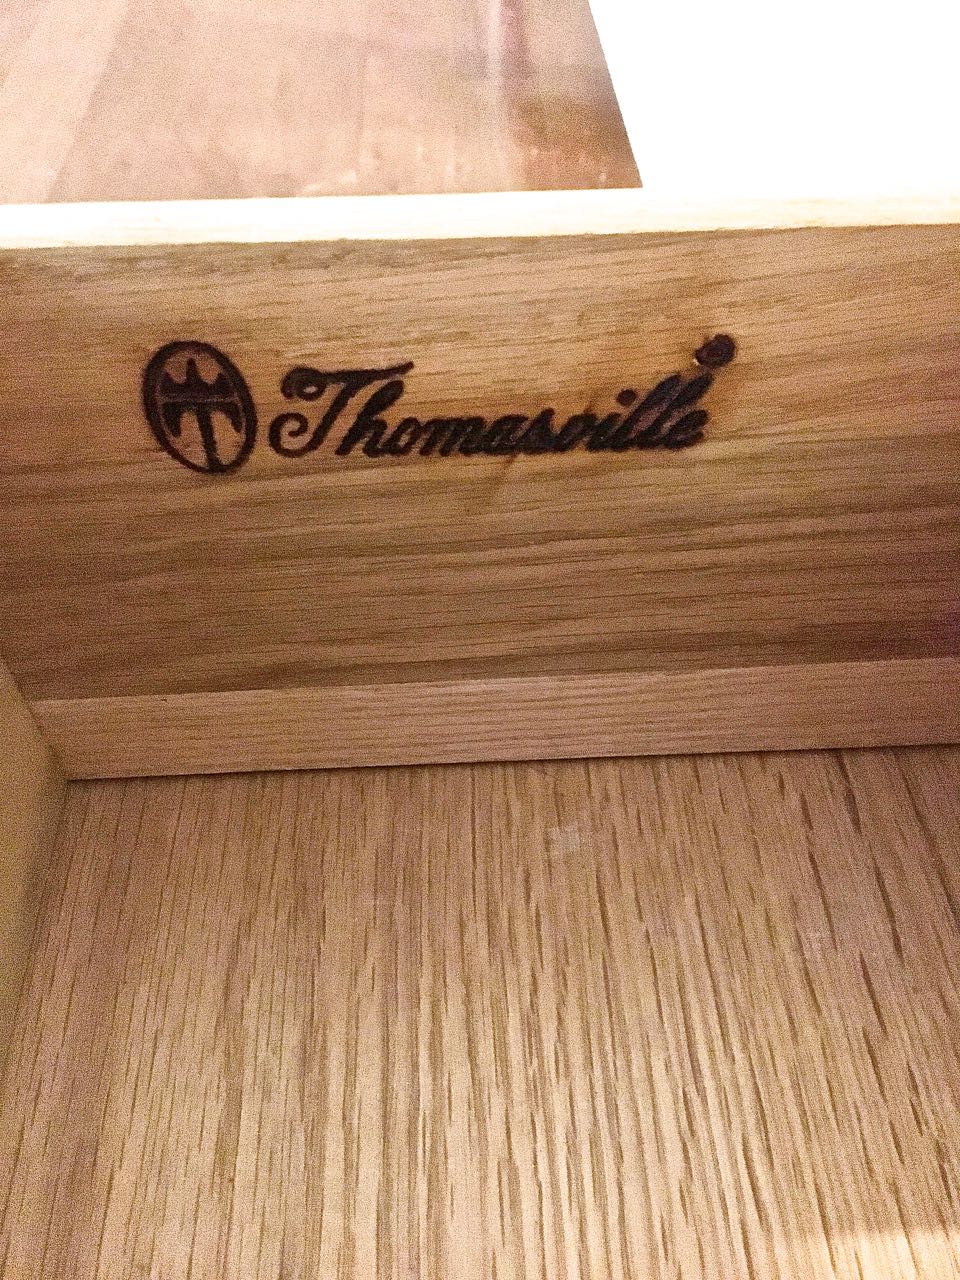 Thomasville Furniture